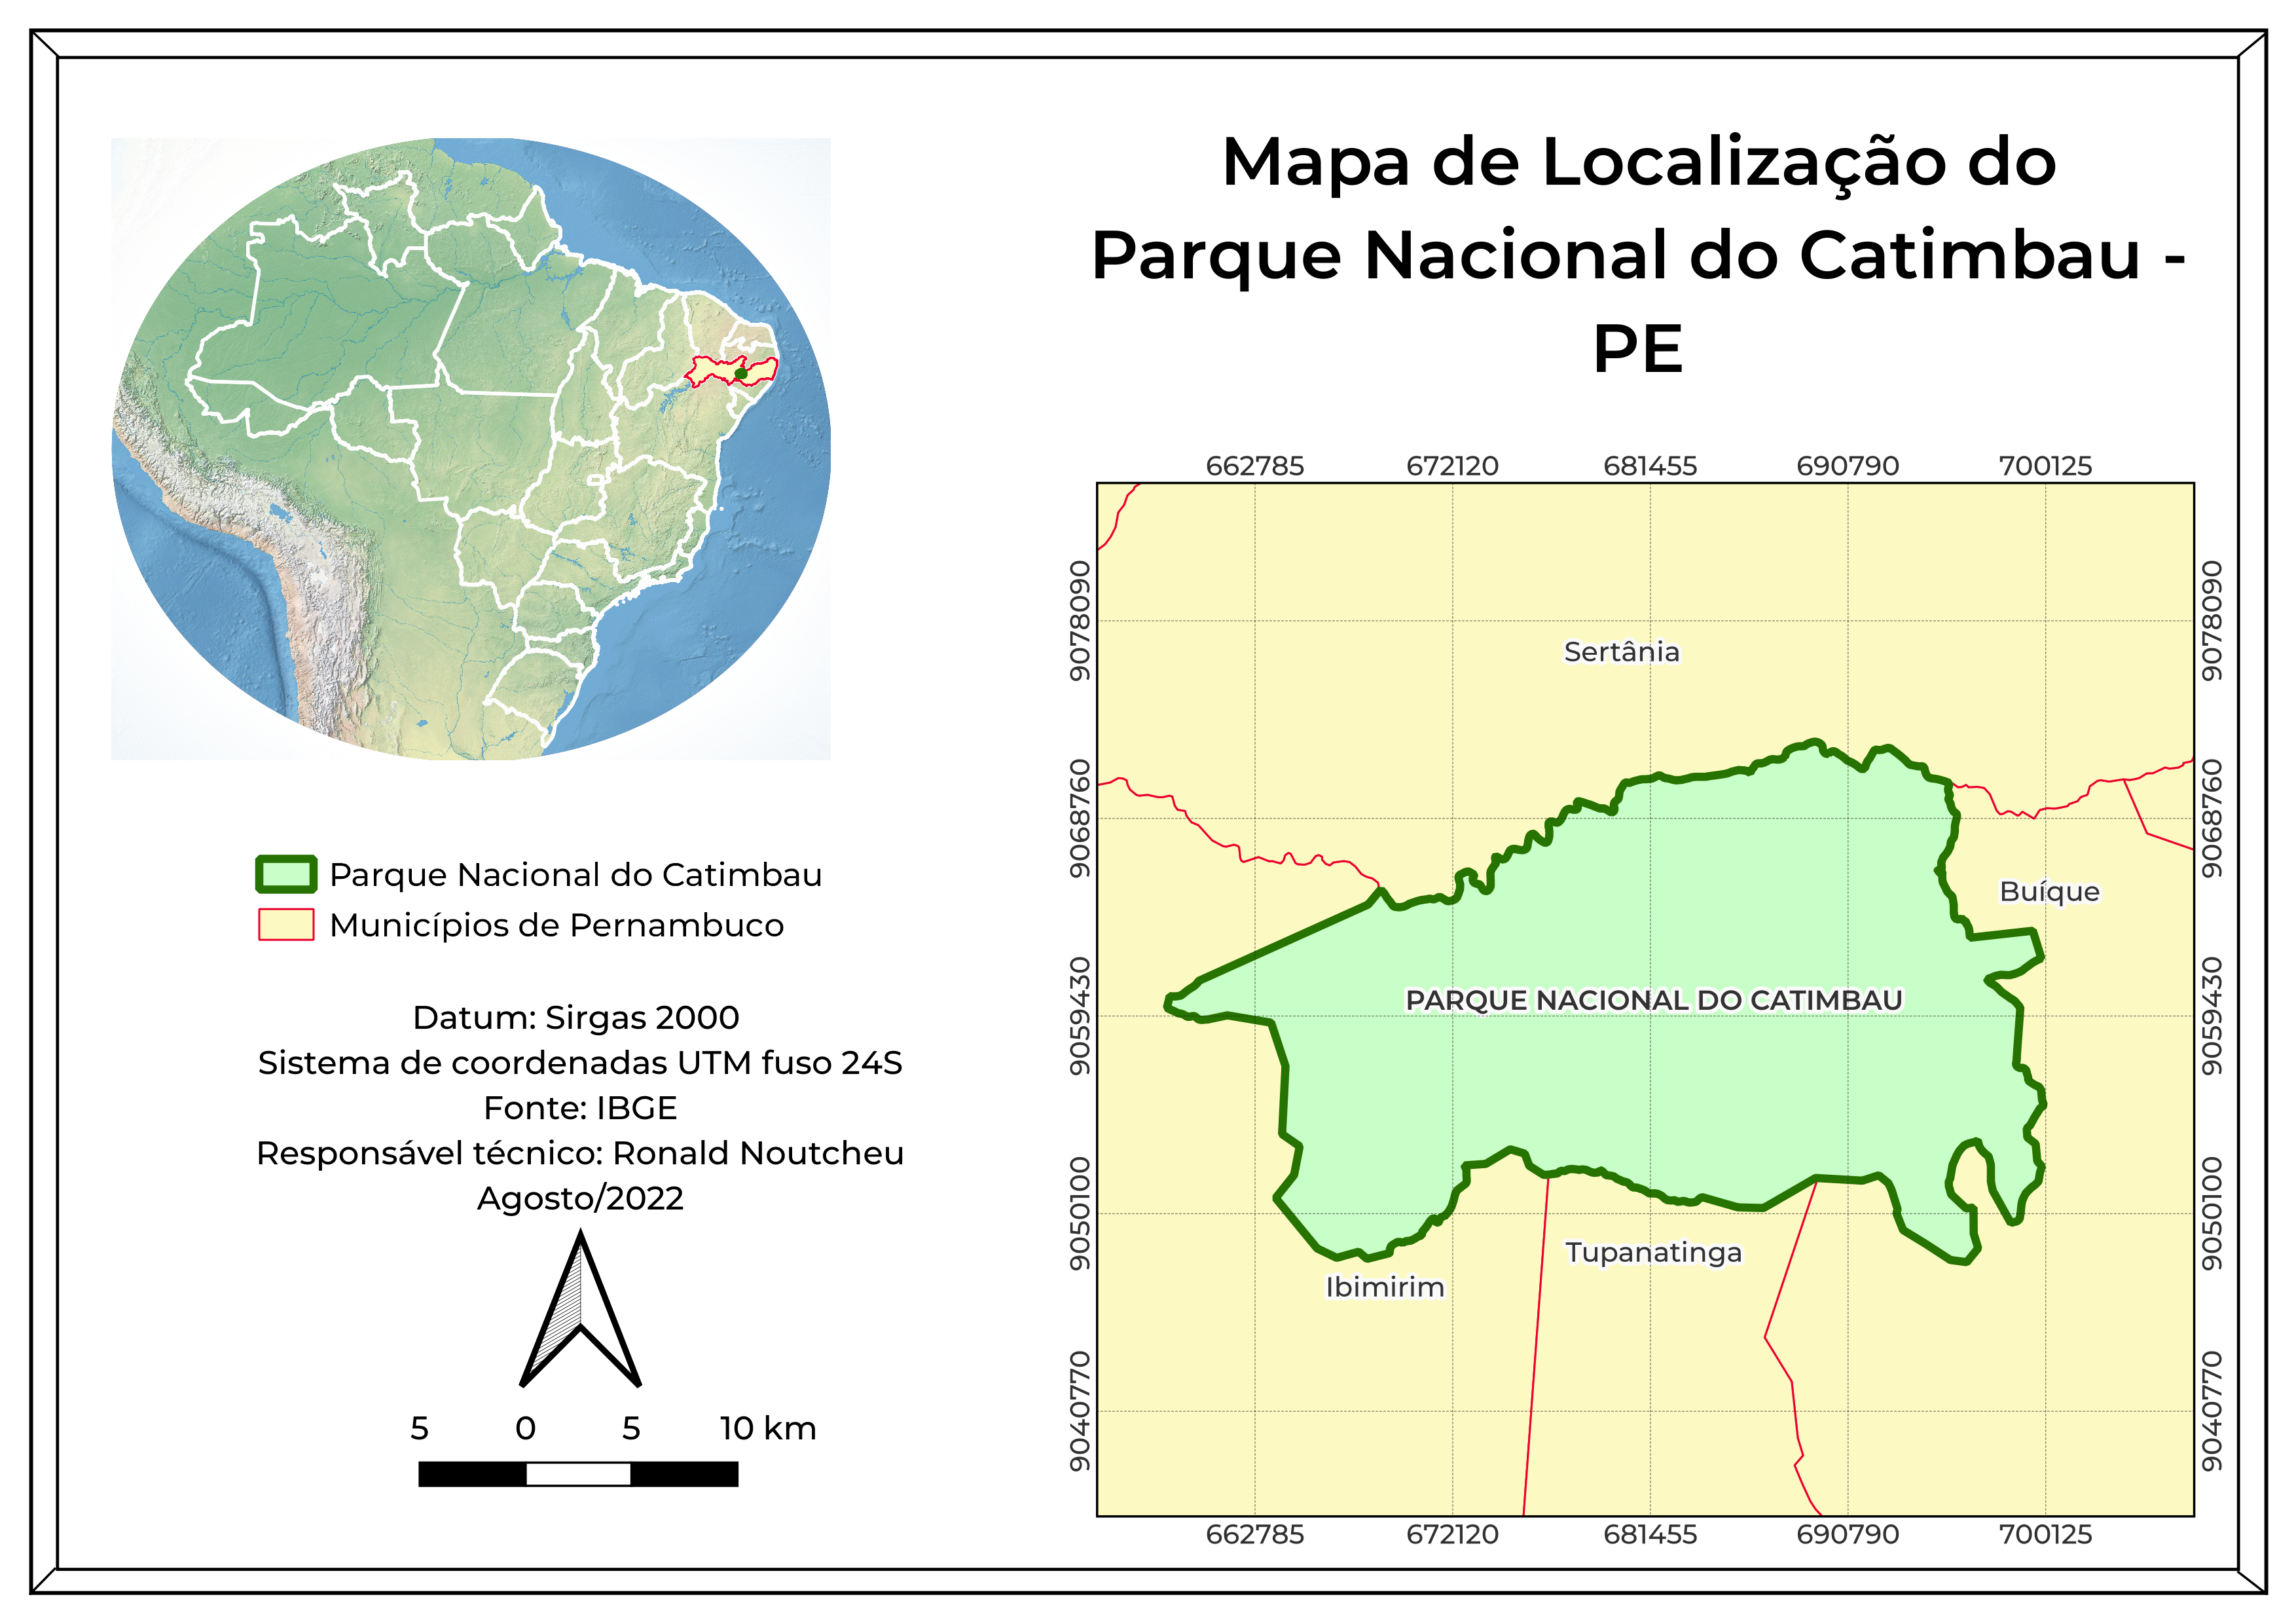 Mapa de Localização/Localization map